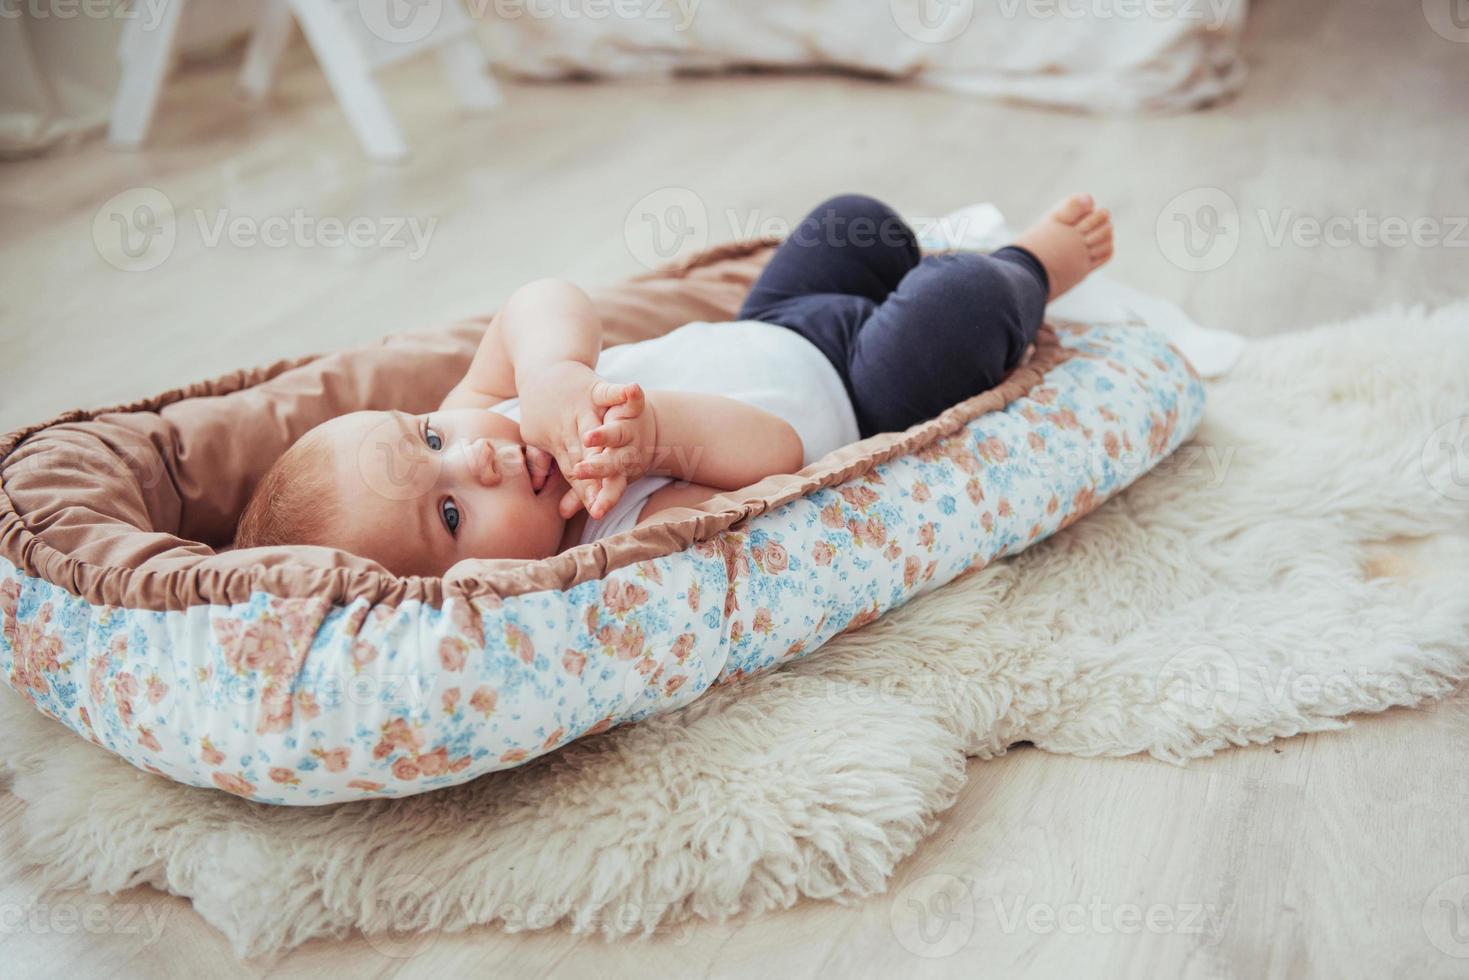 sängkläder för barn. bebisen sover i sängen. en frisk liten bebis strax efter födseln. foto